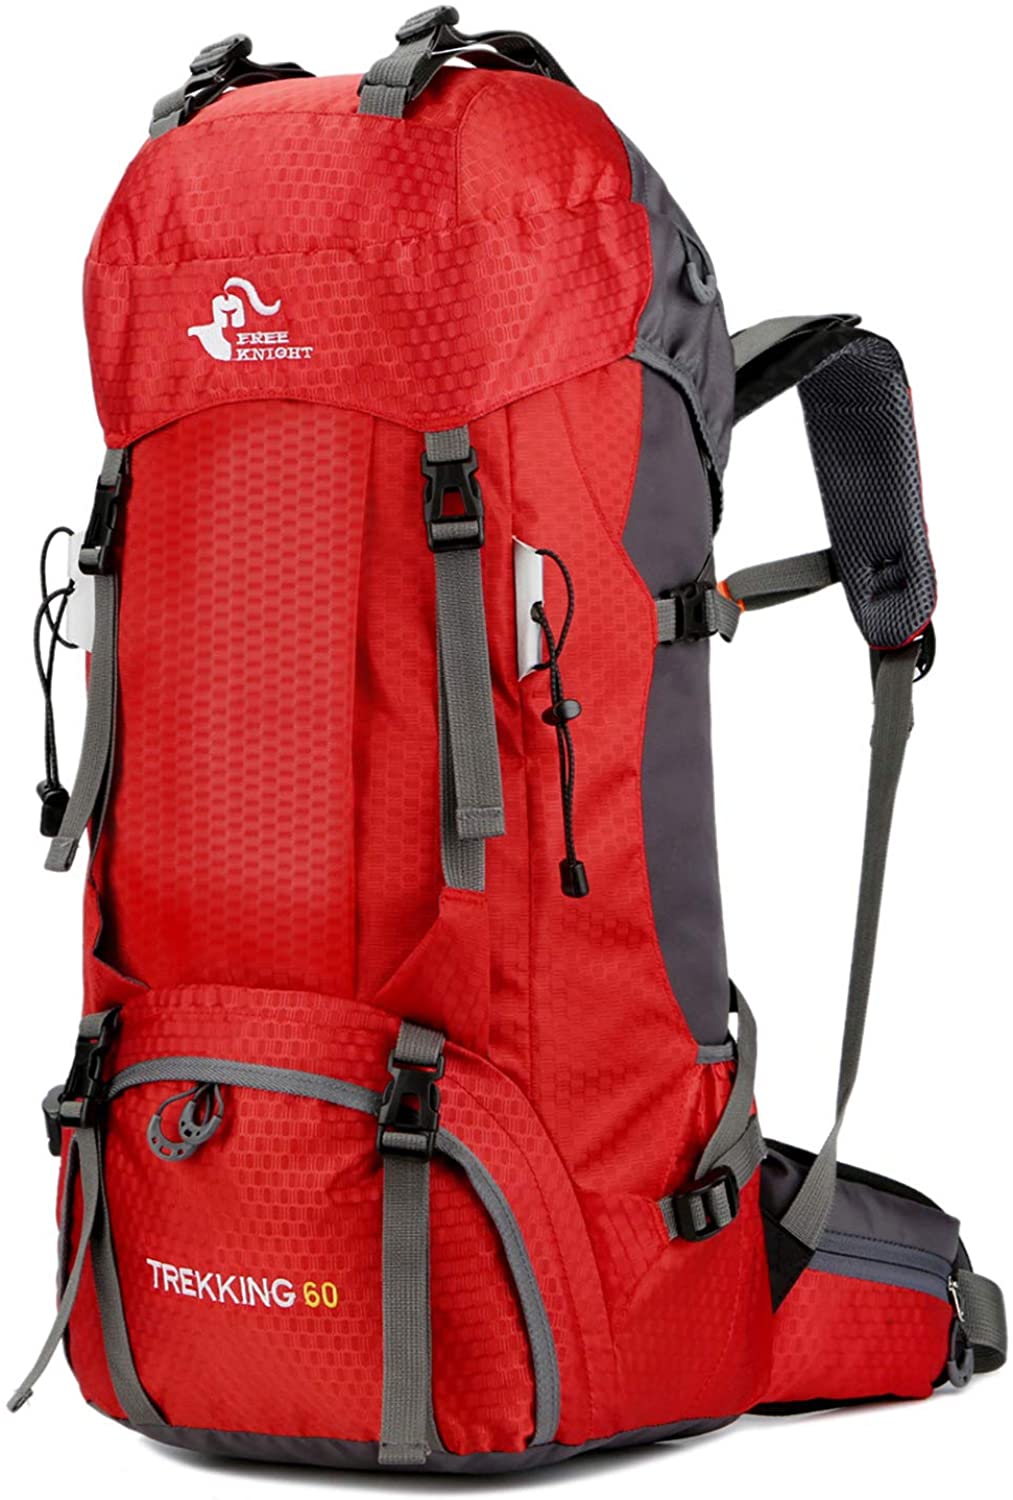 バックパック 多機能 登山 リュック 60L 大容量 登山用バッグ 軽量 高通気性 リュックサック 山登り 泊旅行 海外旅行 防災 ハイキング レインカバー付き